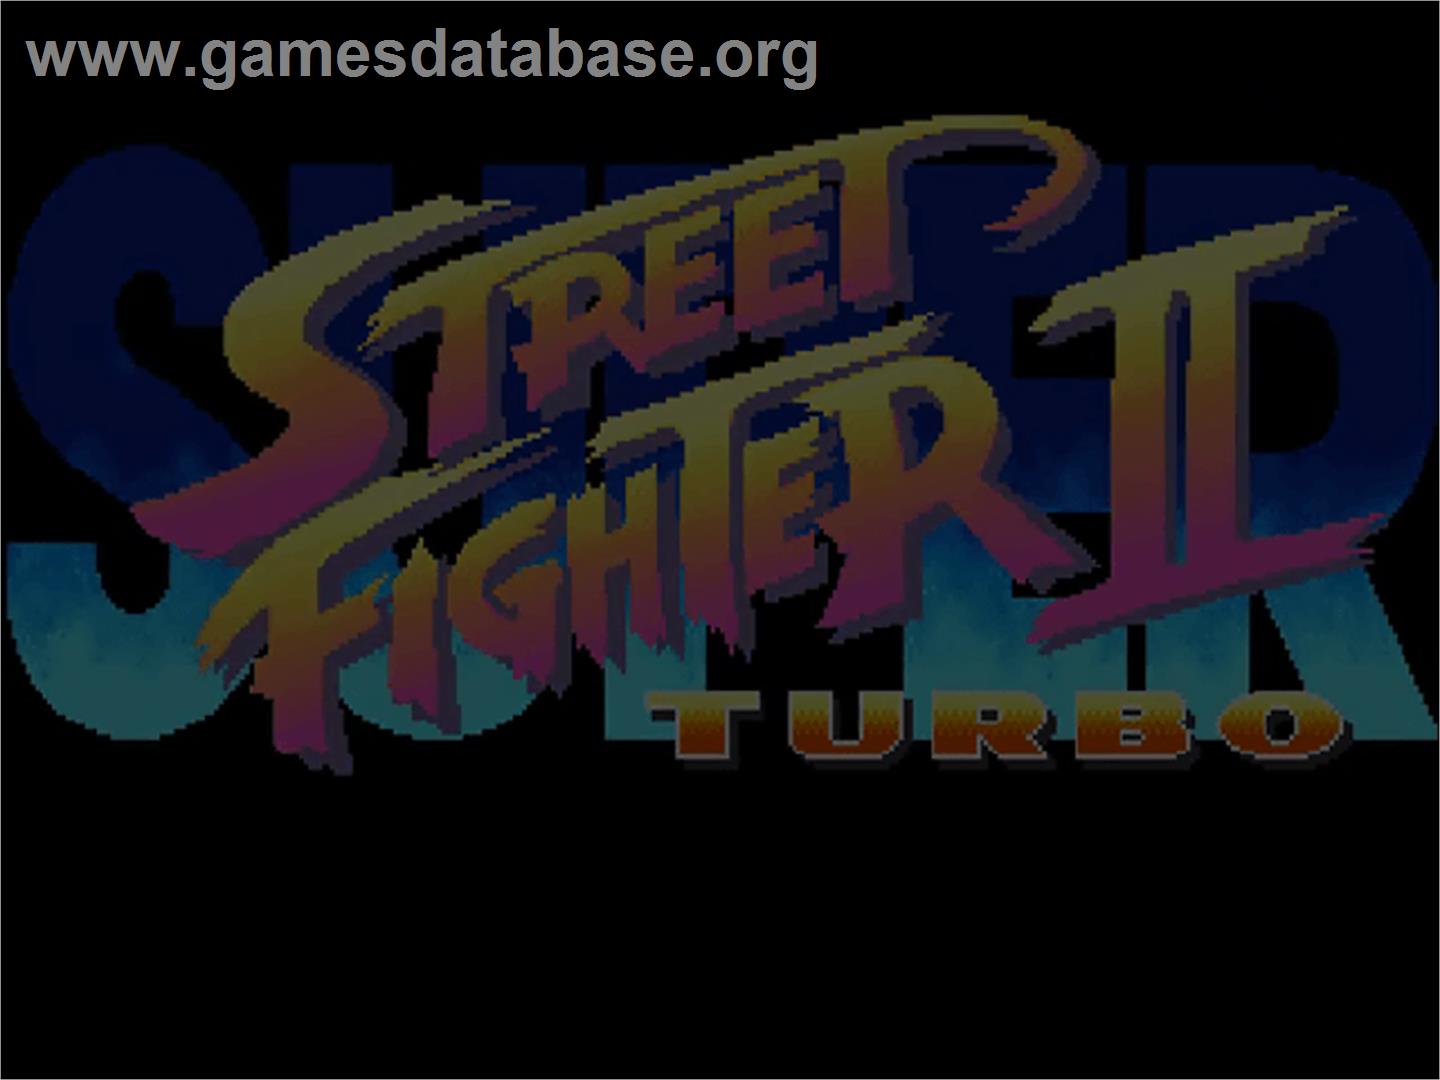 Super Street Fighter II Turbo - Commodore Amiga CD32 - Artwork - Title Screen